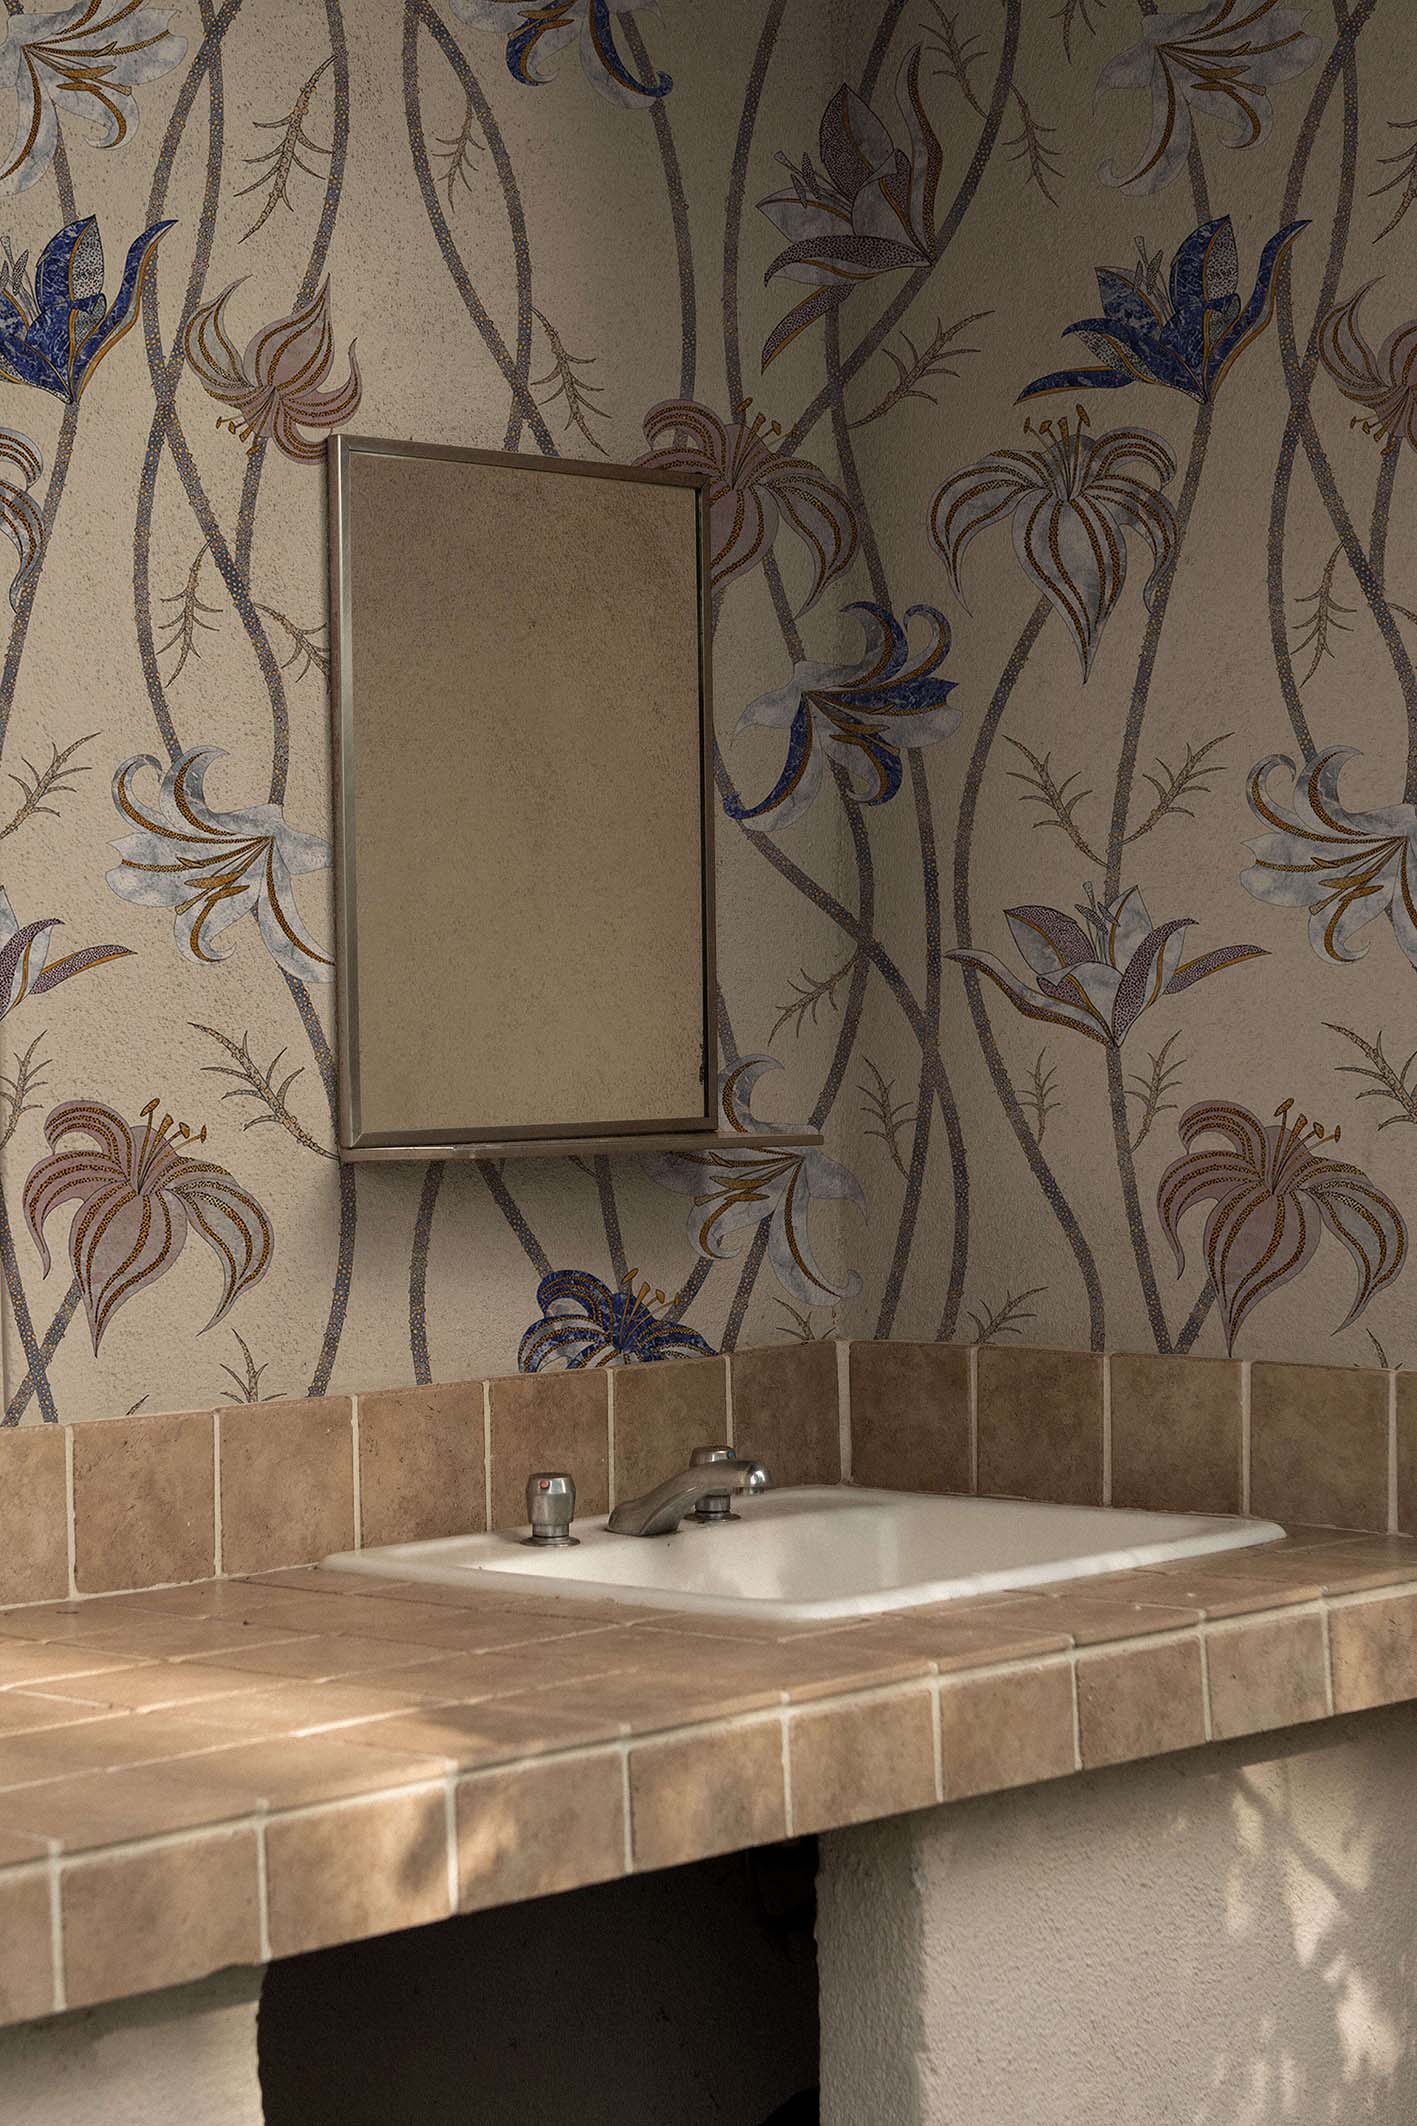 Fiori-Caffelatte-MaVoix-carte-da-parati-wallpaper-bathroom-decor-Collezione-Racconti